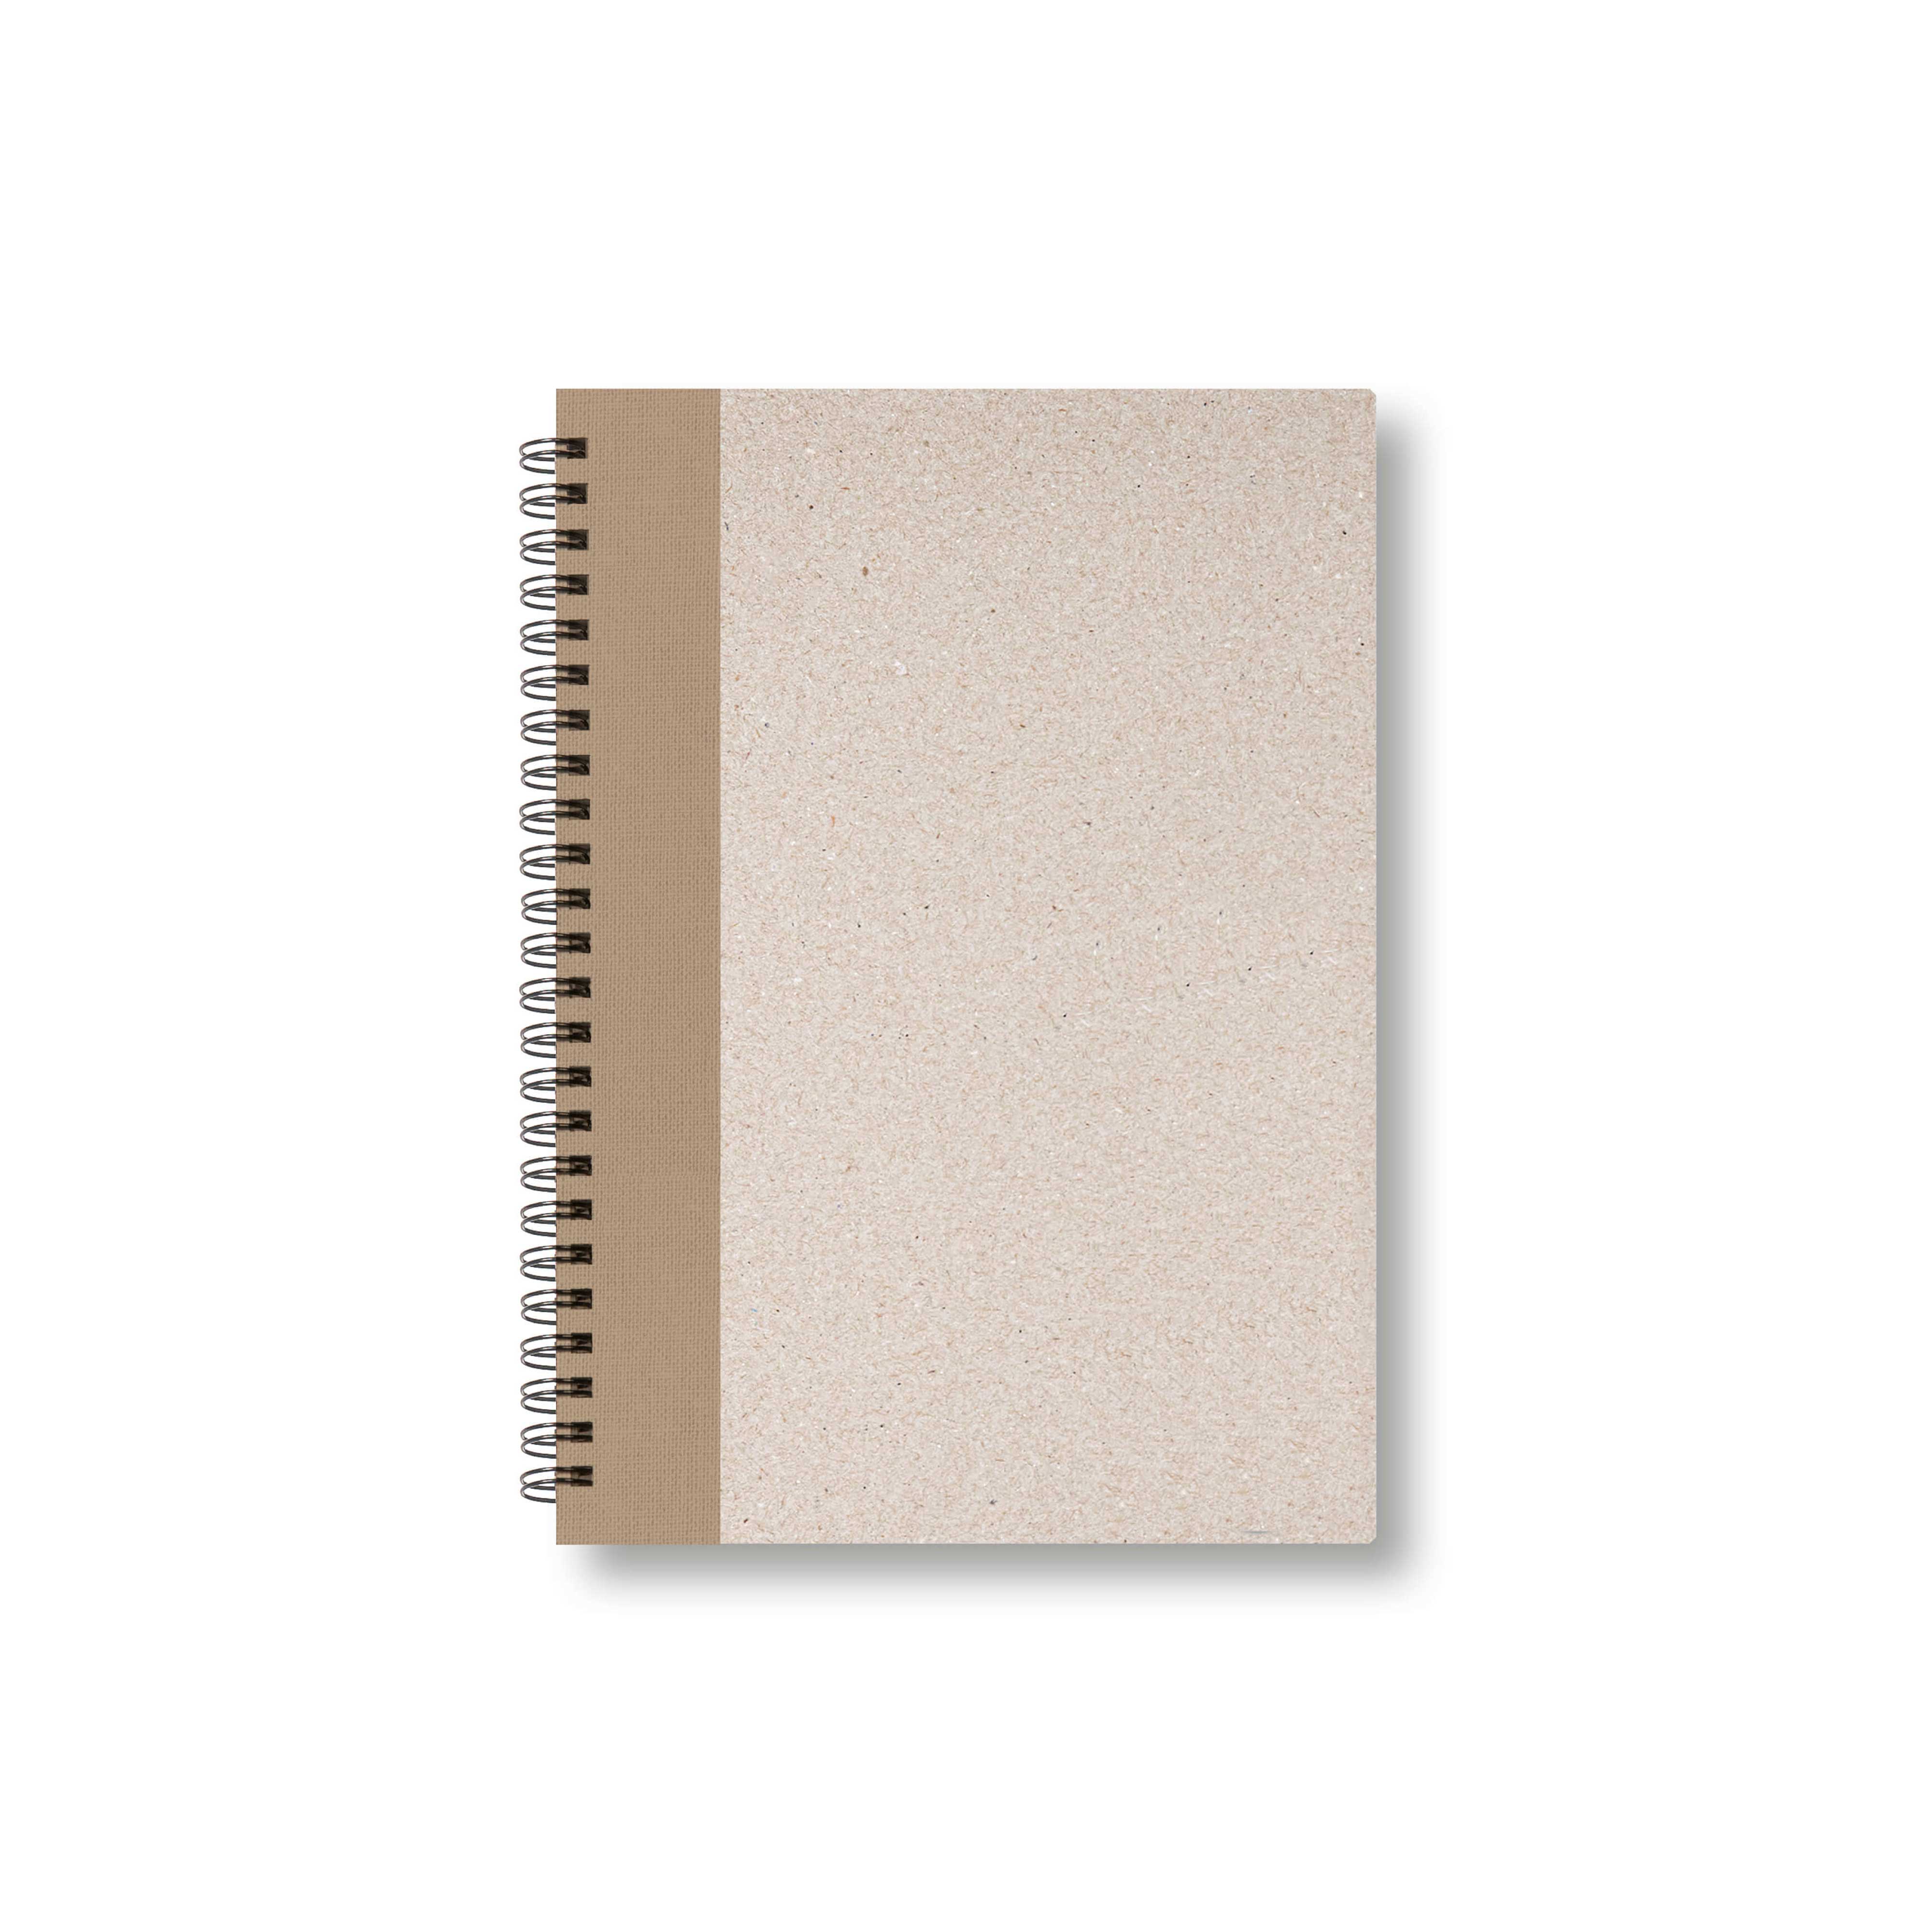 BOBO Zápisník, B6, čtverečkovaný, hnědý, konfiguruj si obálku